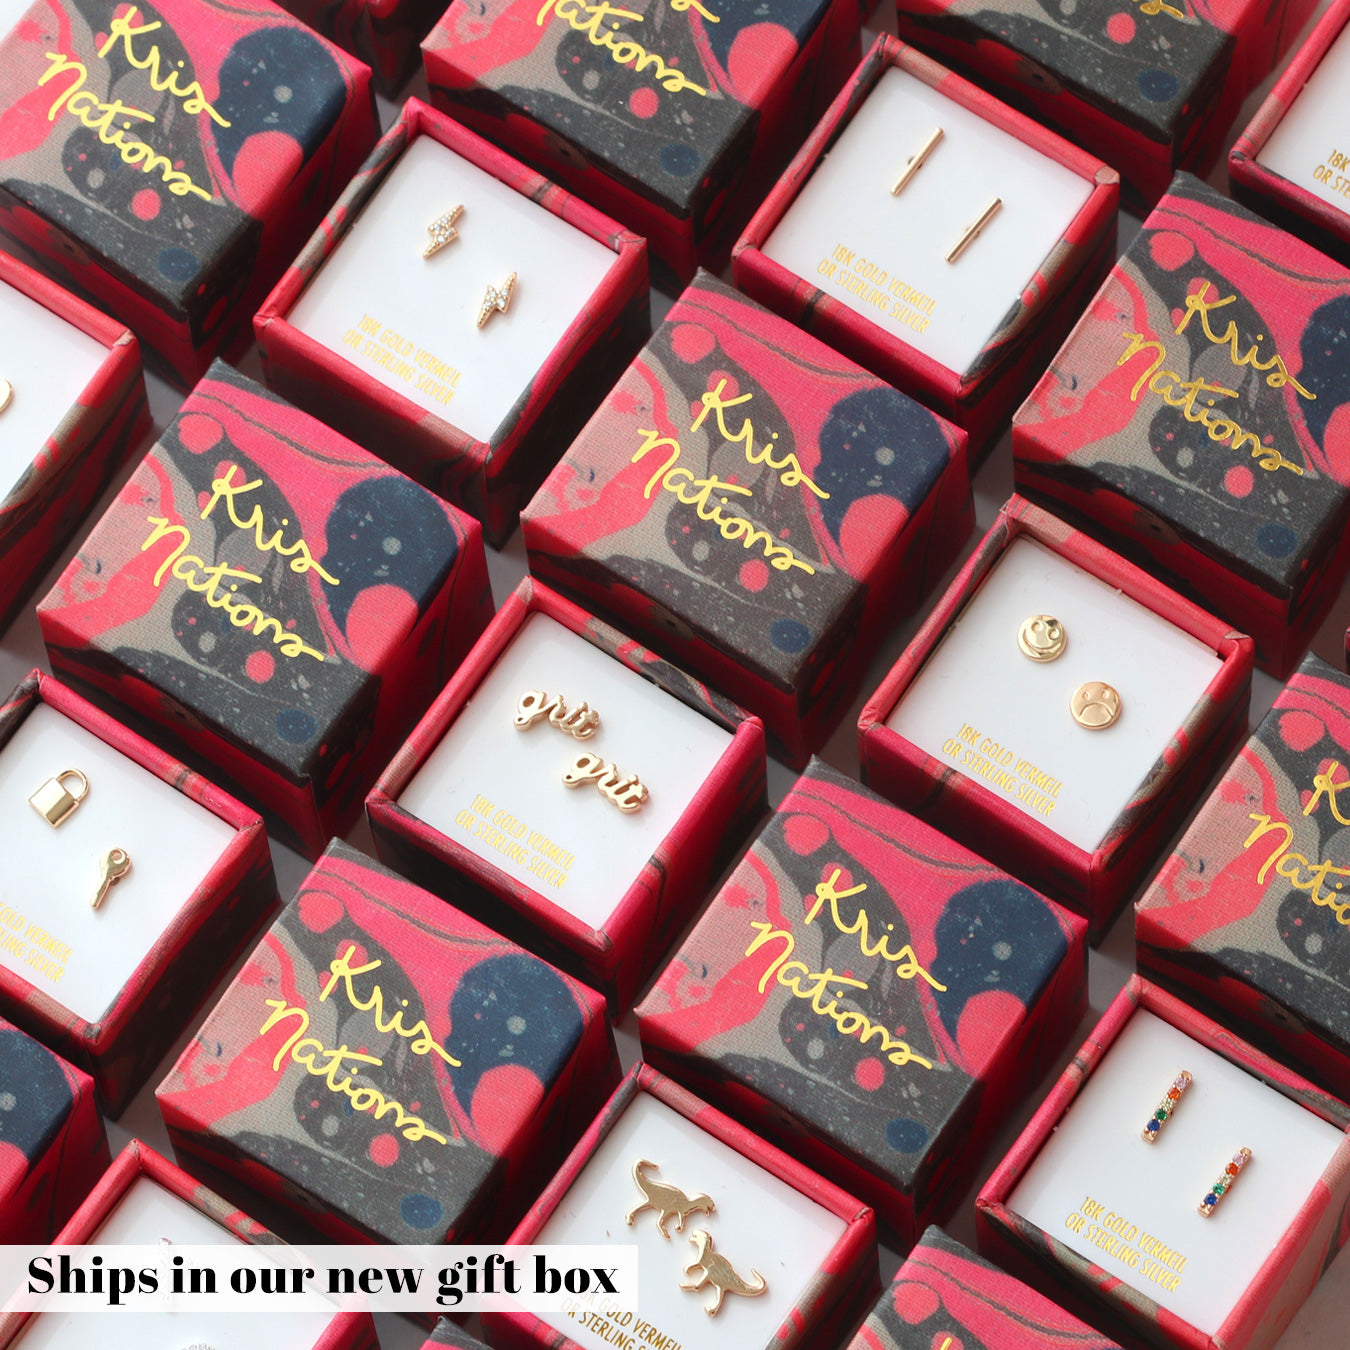 Kris Nations Lock & Key Stud Earrings in 18K Gold - Bliss Boutiques